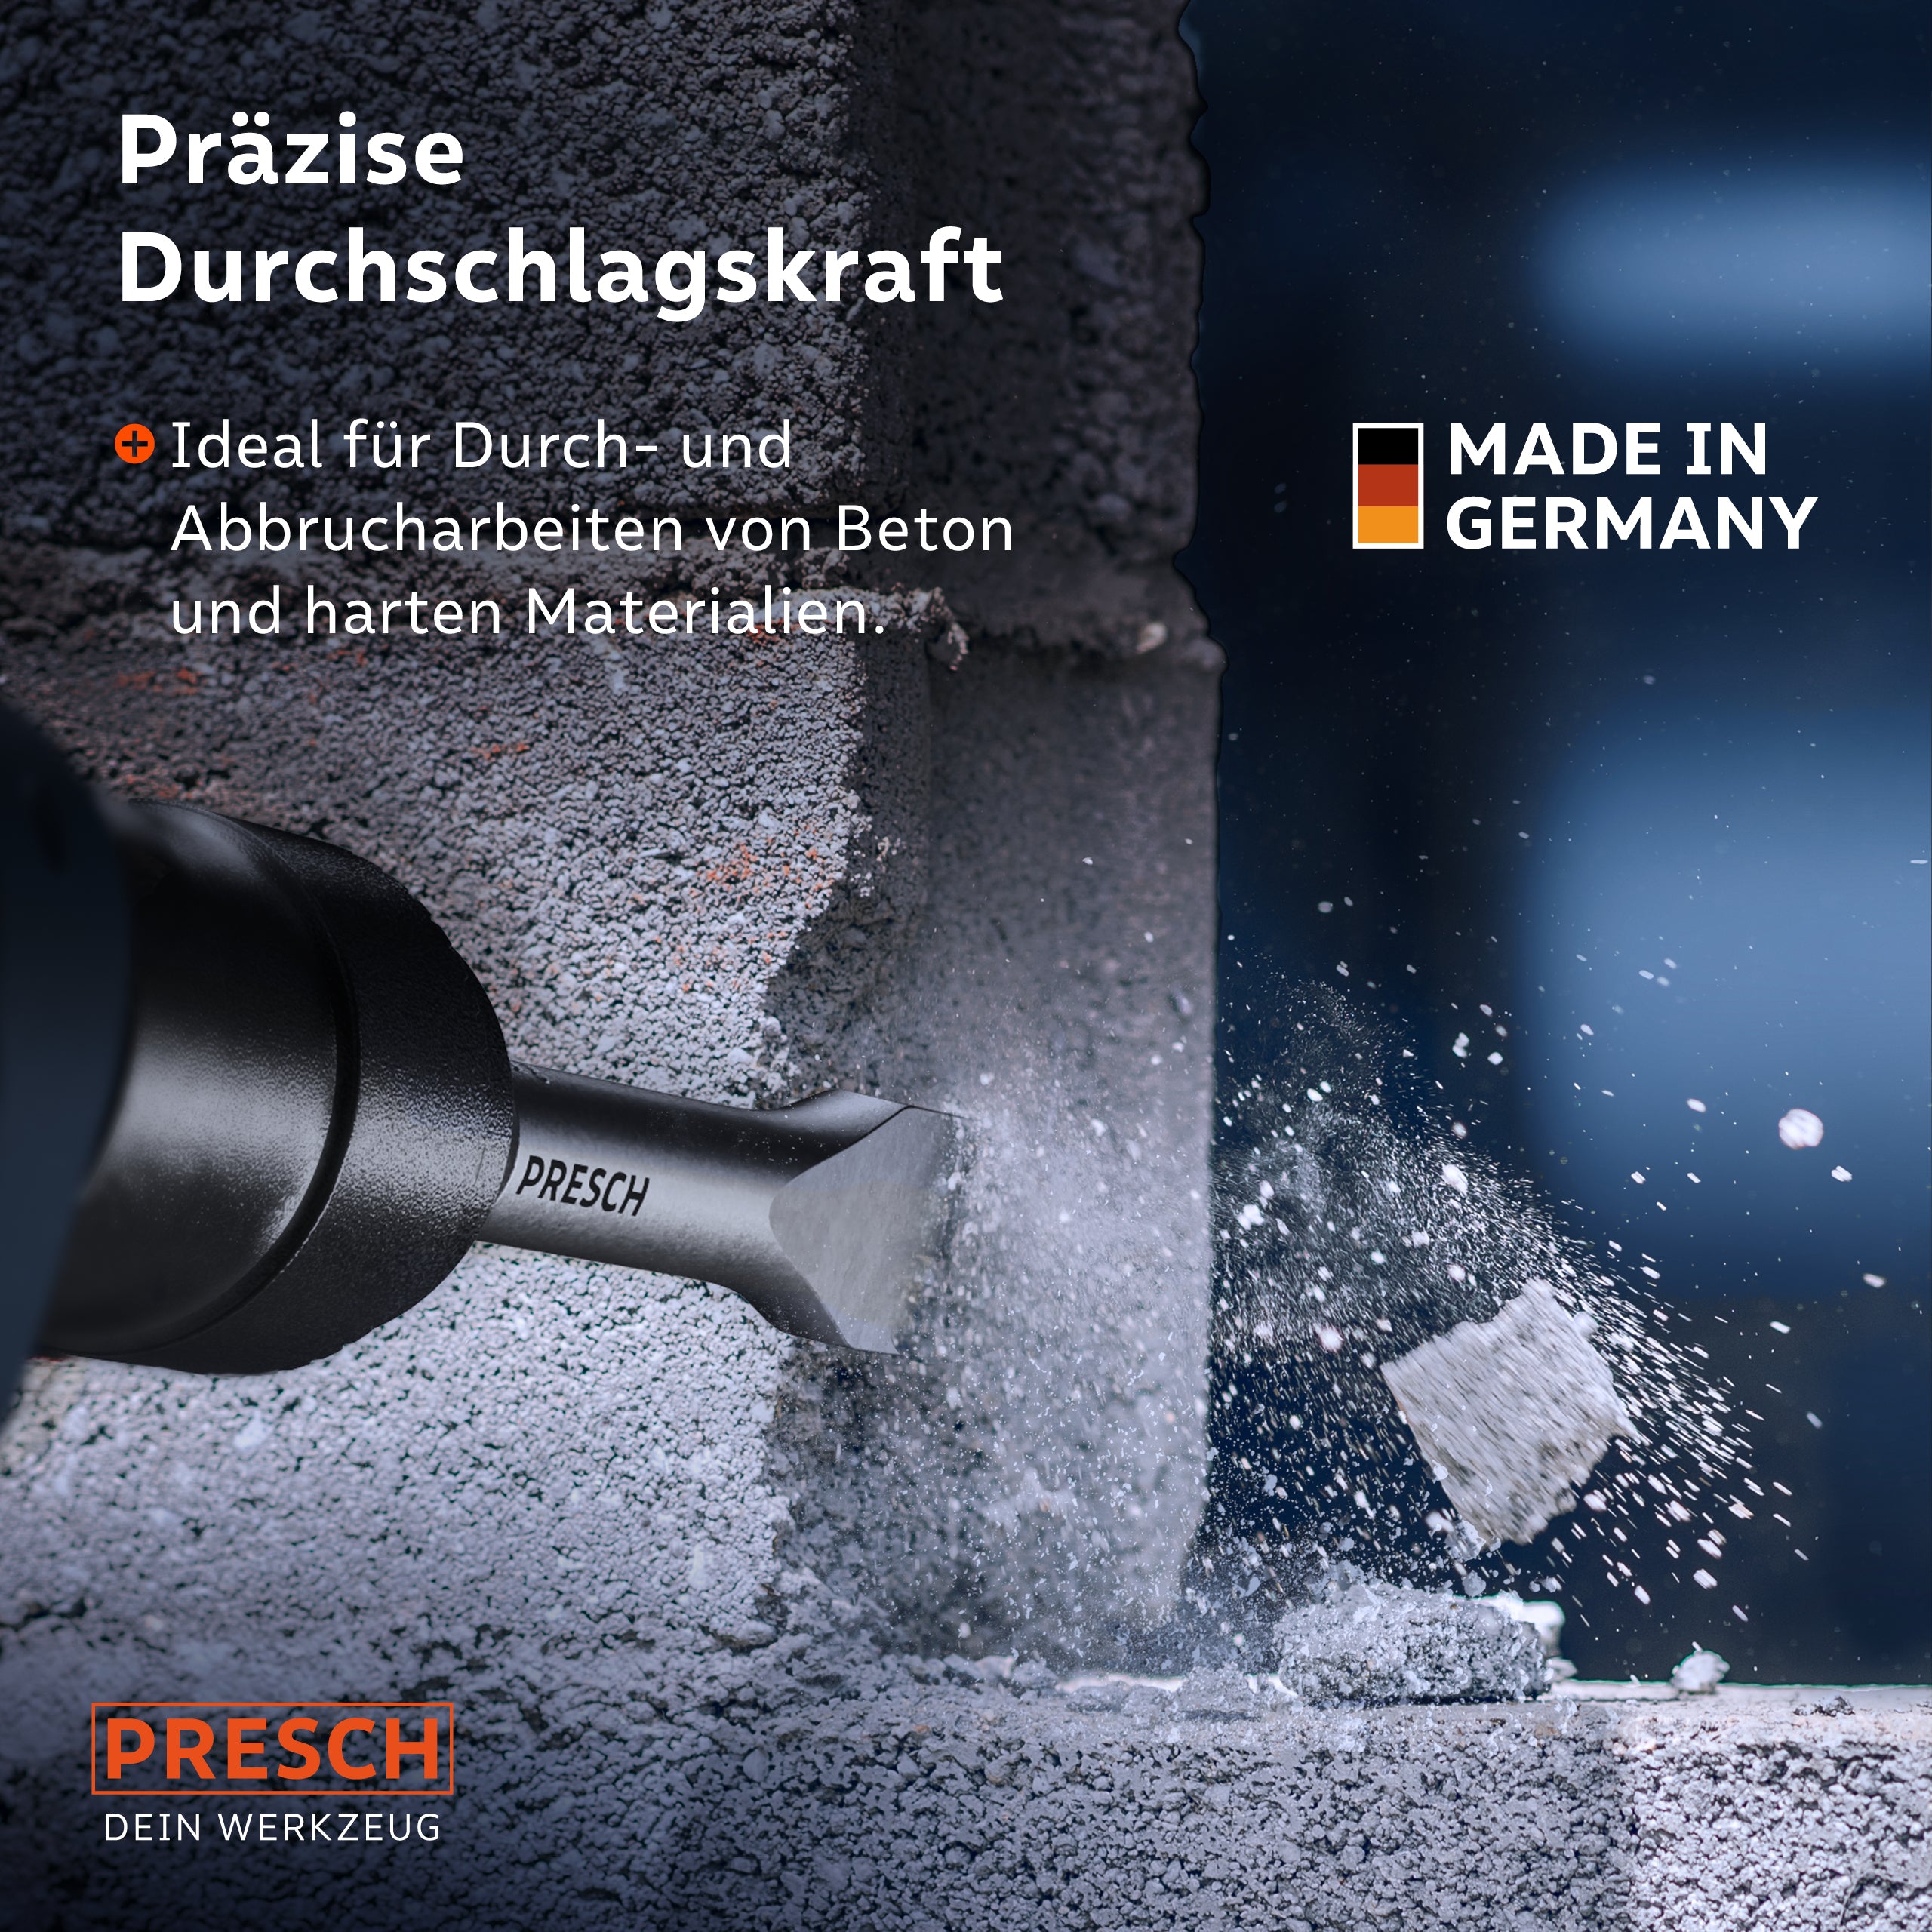 Presch Werkzeug mit präziser Durchschlagskraft beim Einsatz auf Beton, Qualitätsmeißel Made in Germany.